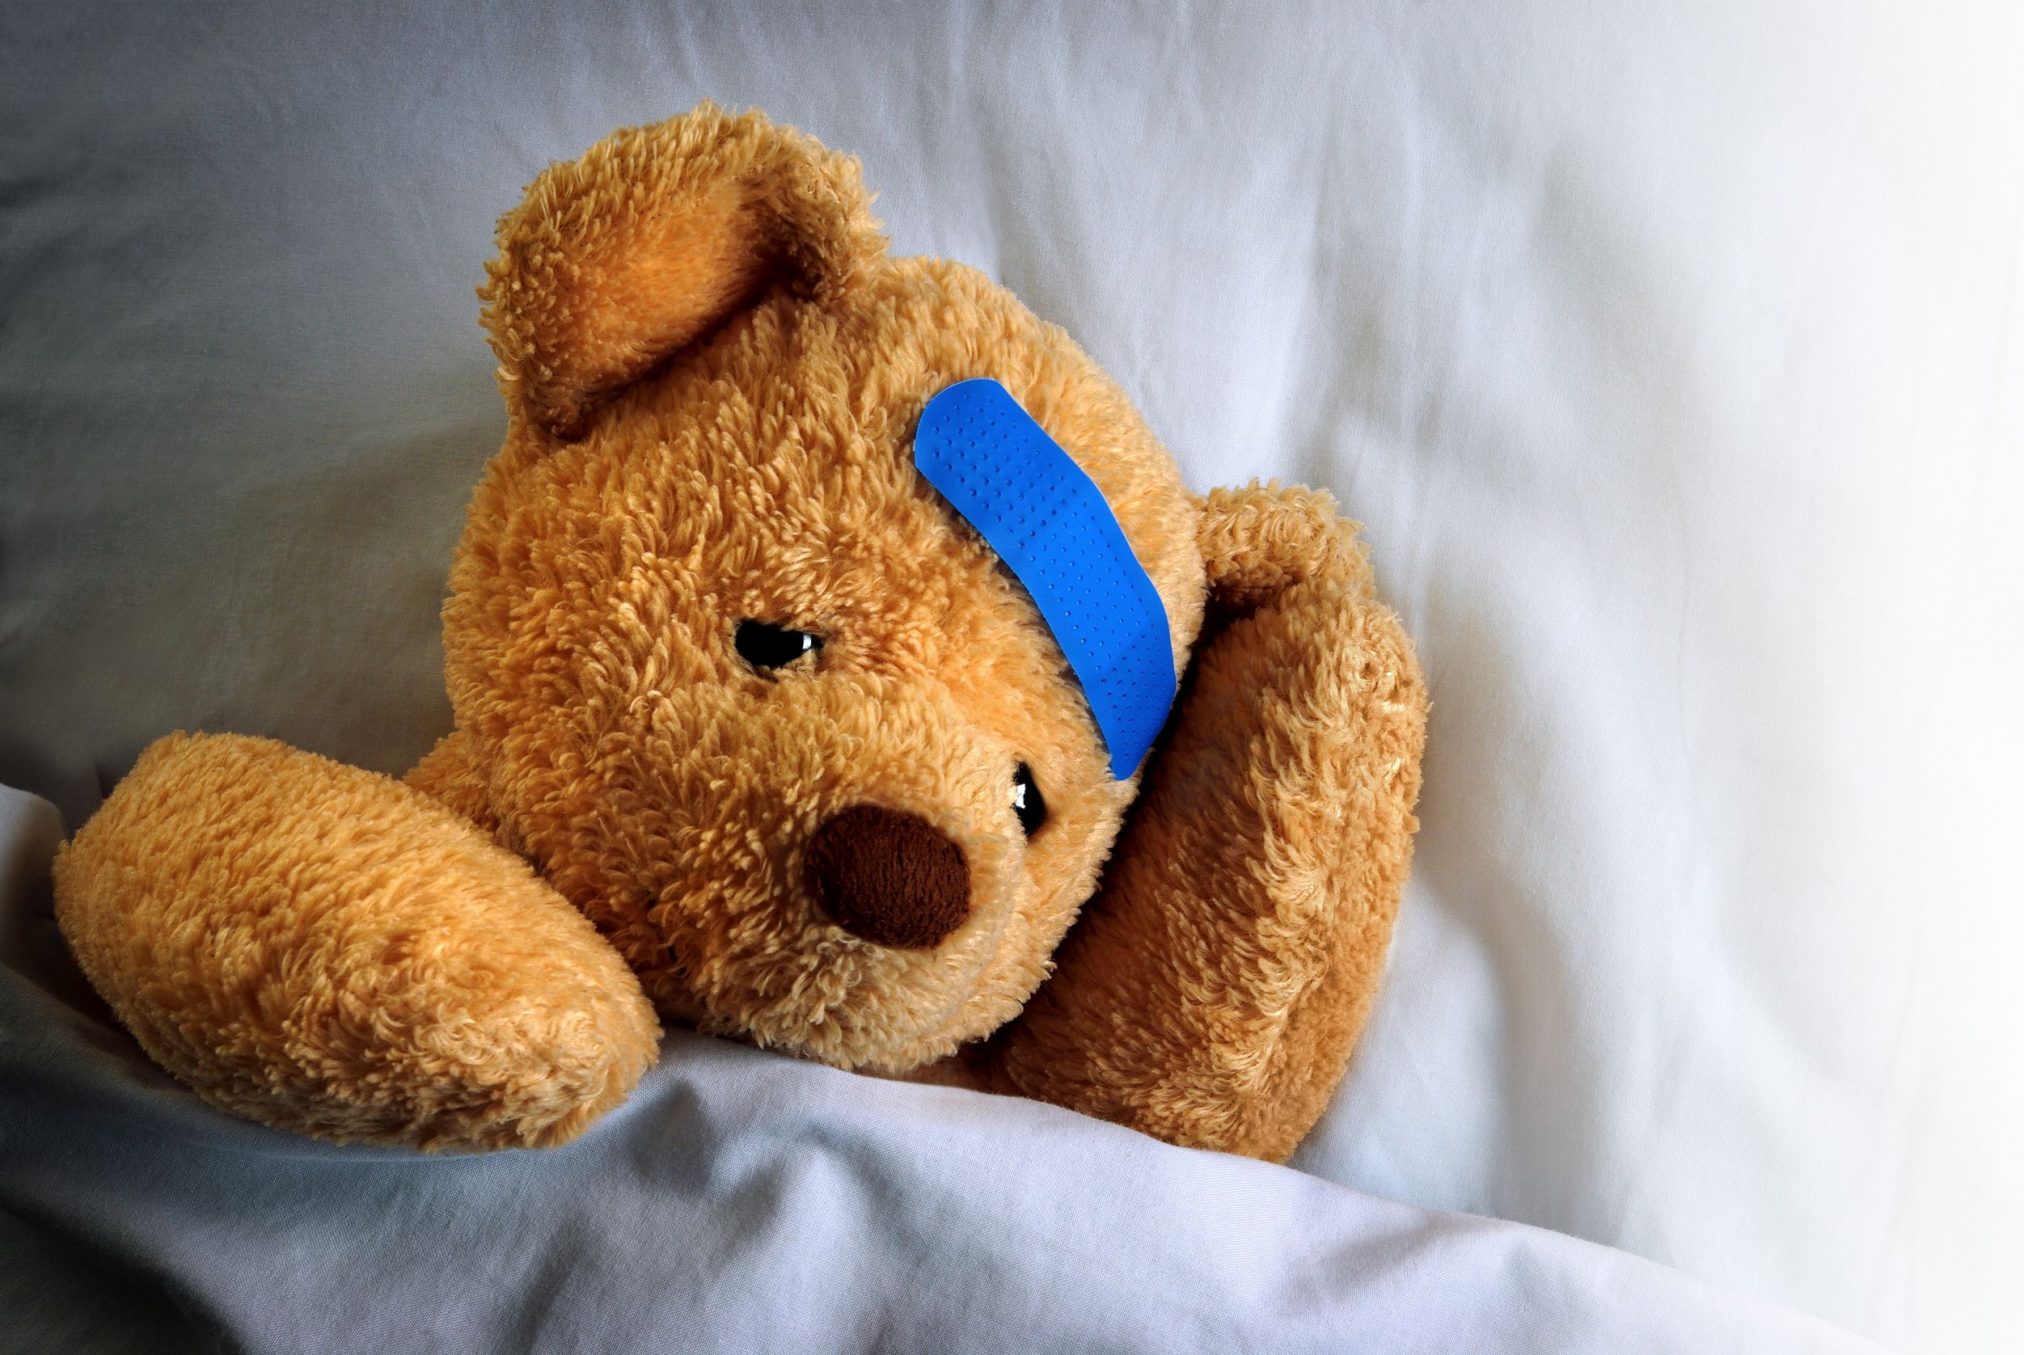 teddy bear with band-aid on head